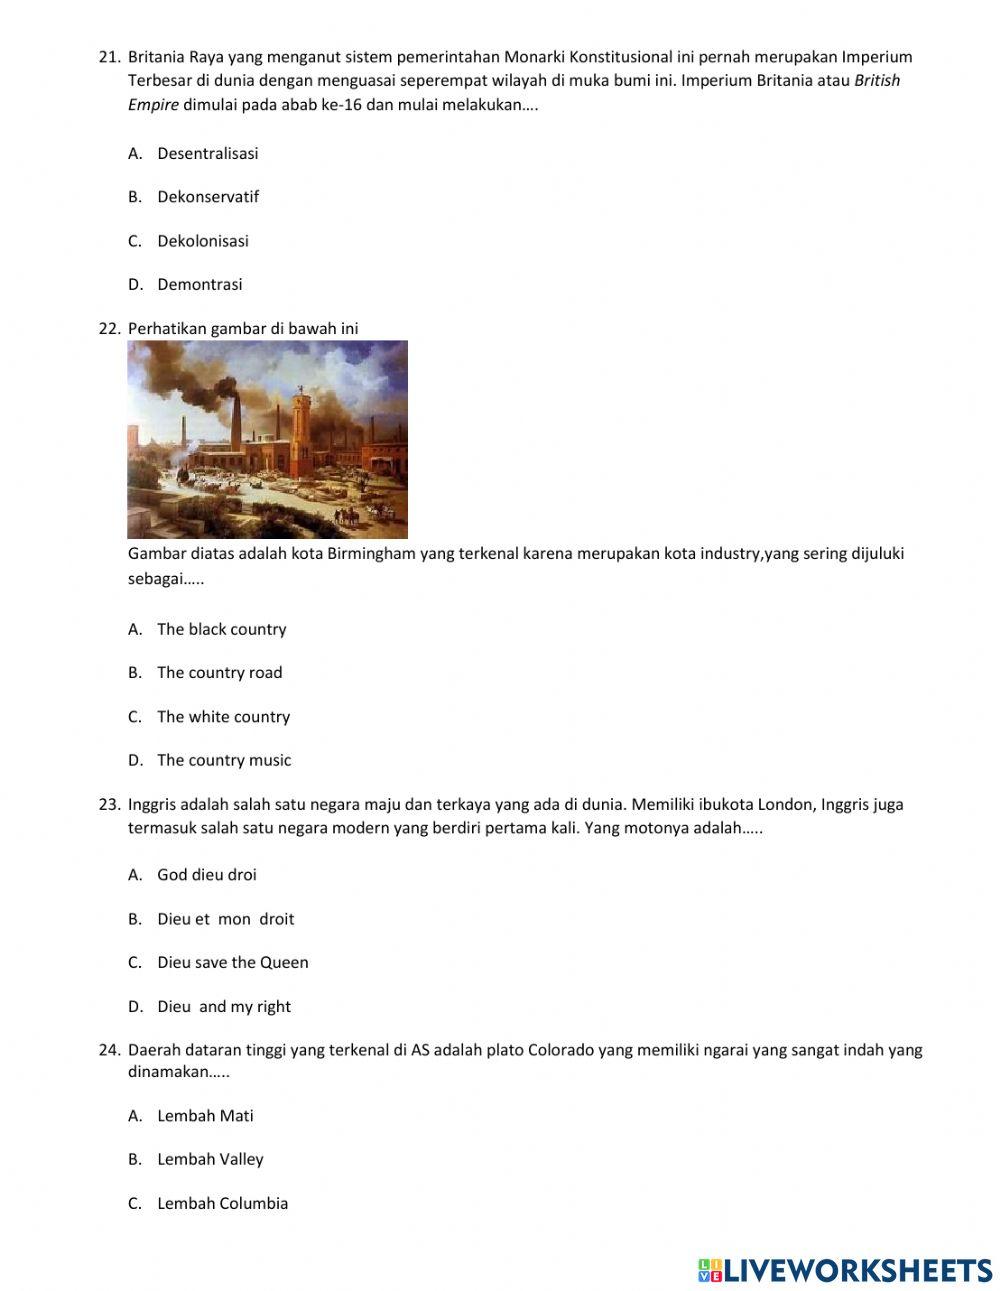 Soal Ujian Mid kelas 9